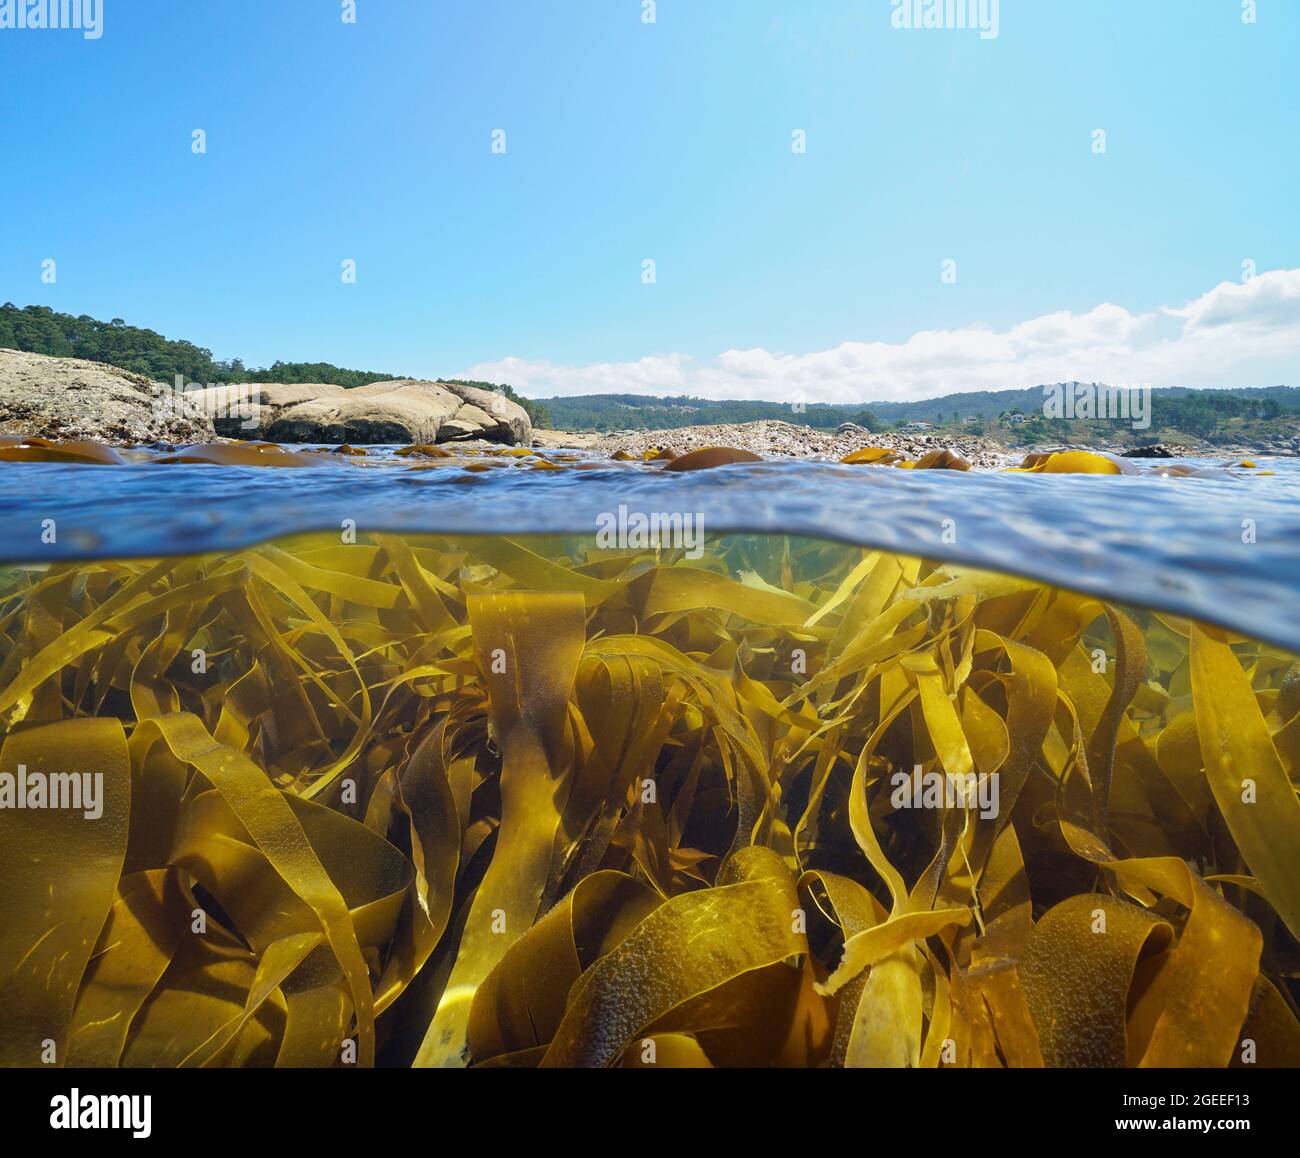 Algue algue de varech algue sous la surface de la mer près de la côte, vue partagée sur et sous l'eau, océan Atlantique, Espagne, Galice, province de Pontevedra Banque D'Images